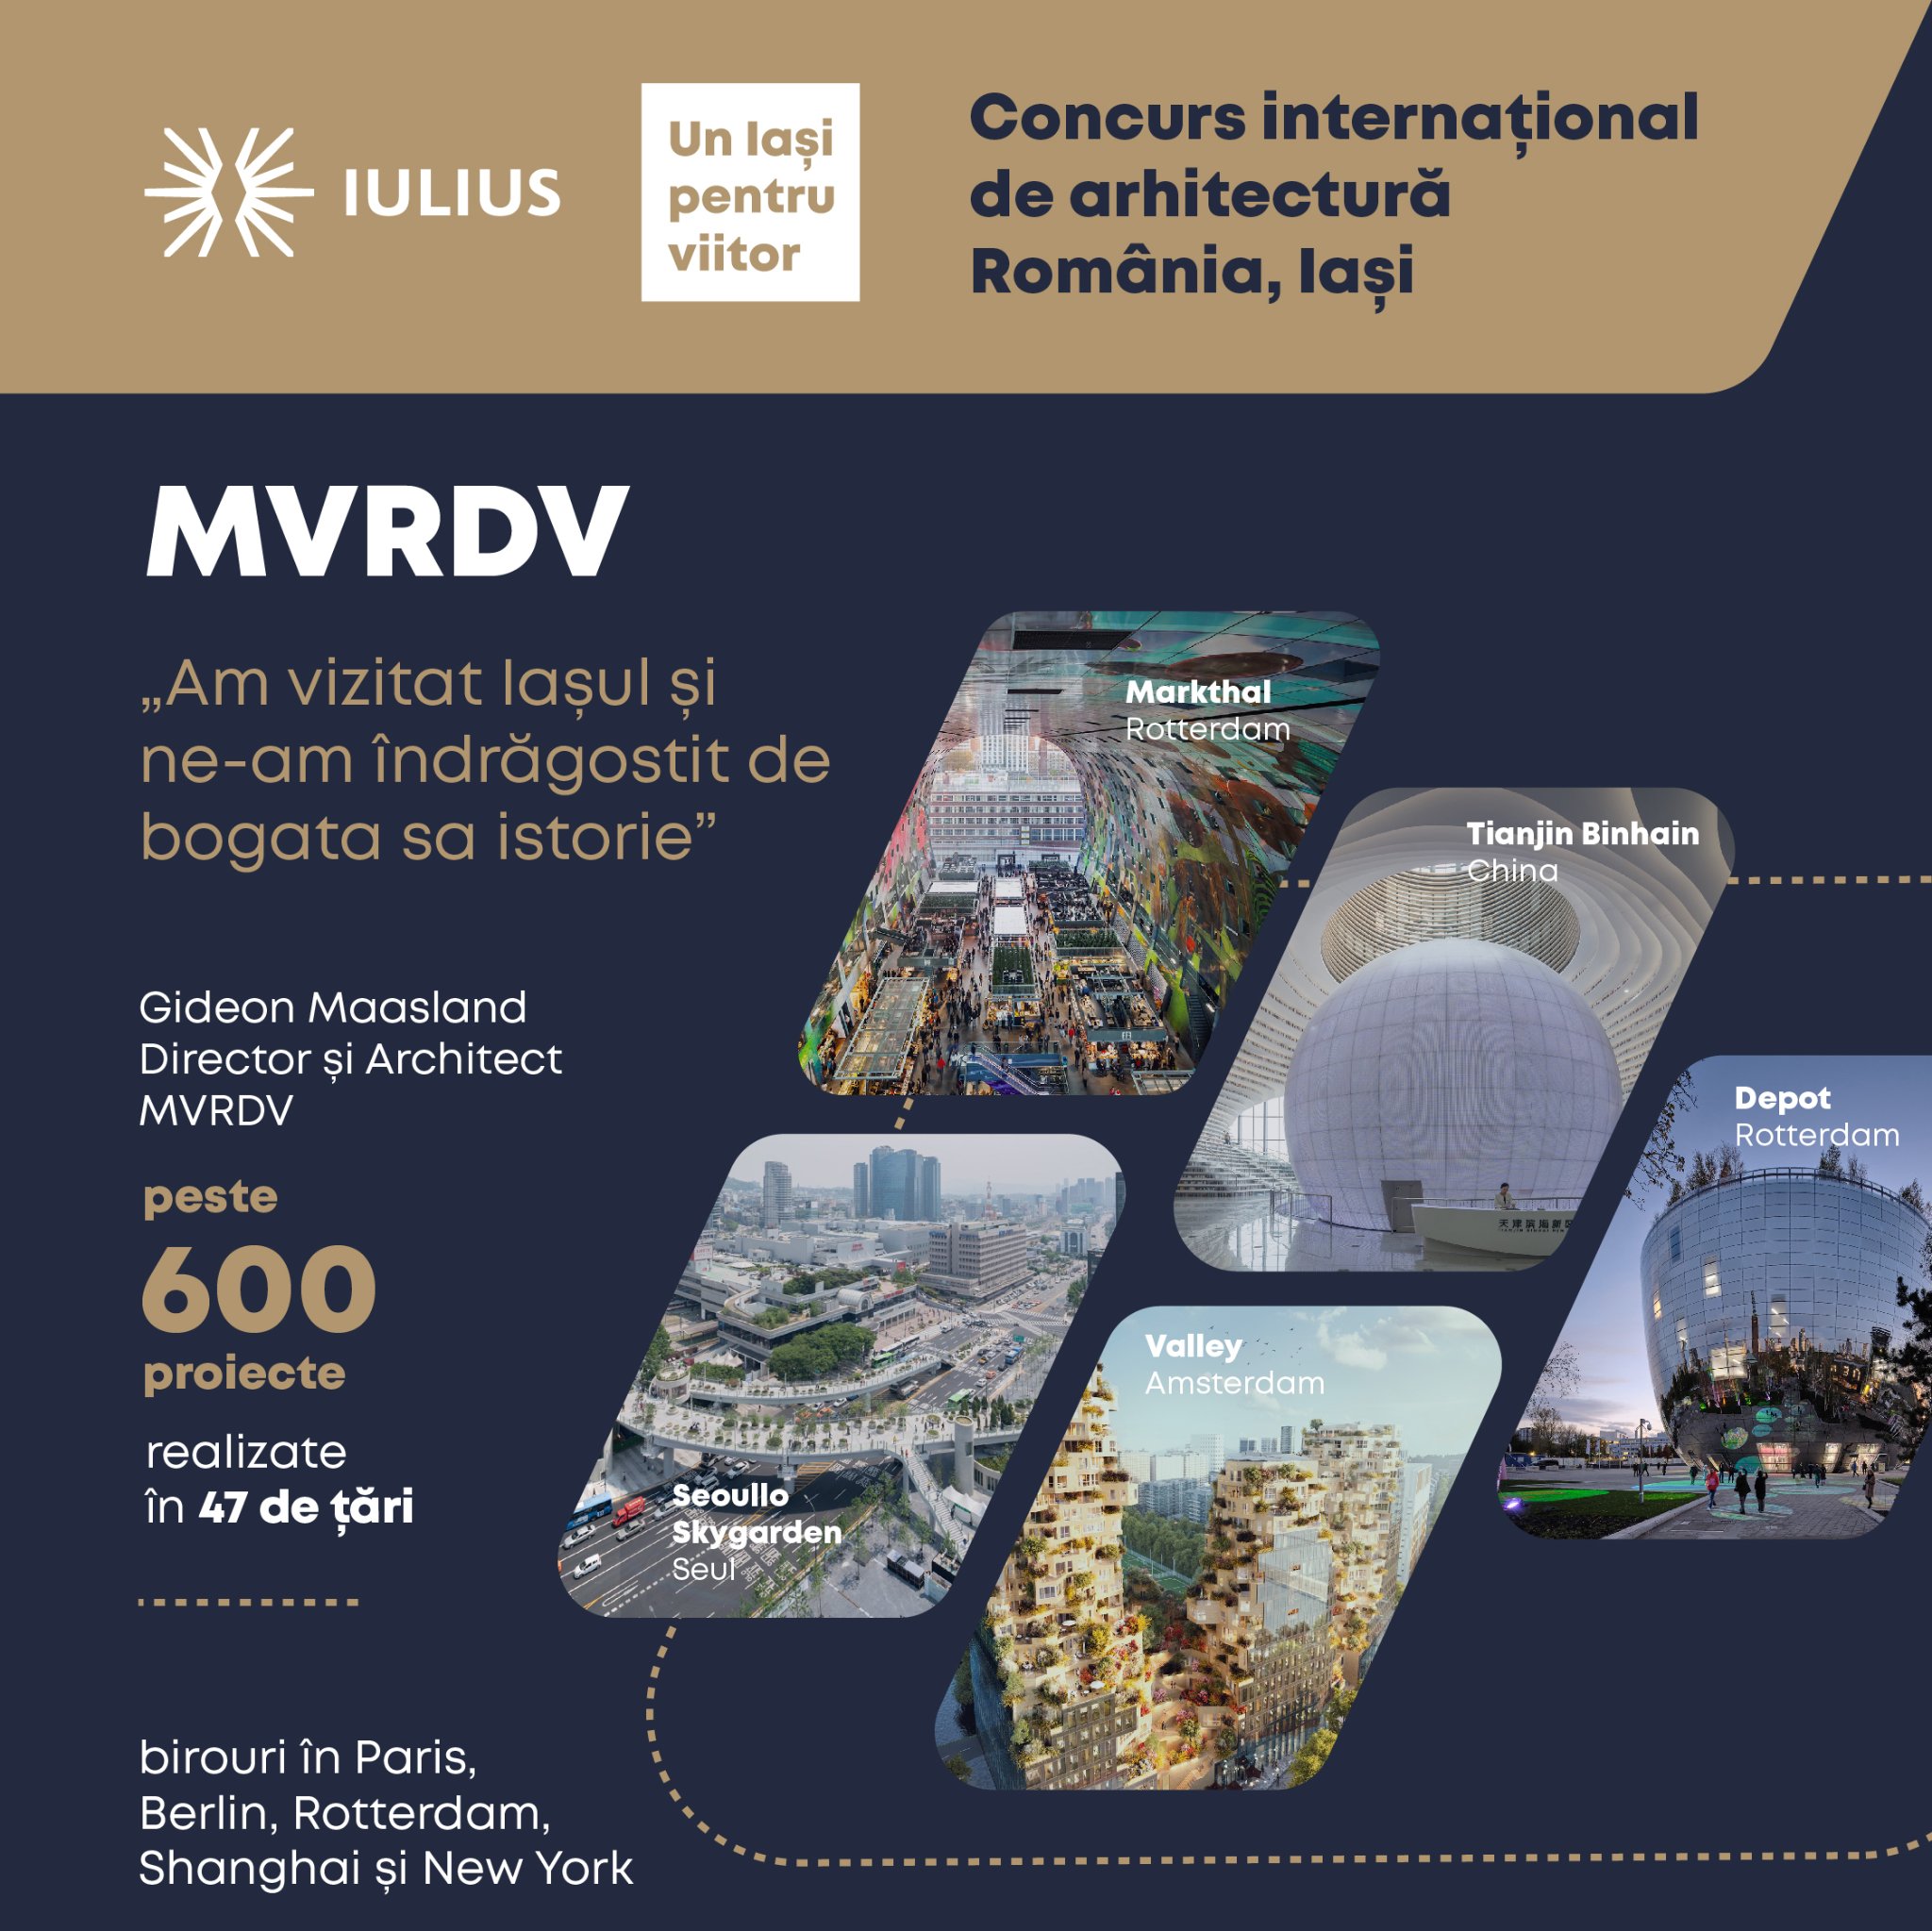 Video - MVRDV la concursul internațional de arhitectură organizat de Iulius, la Iași